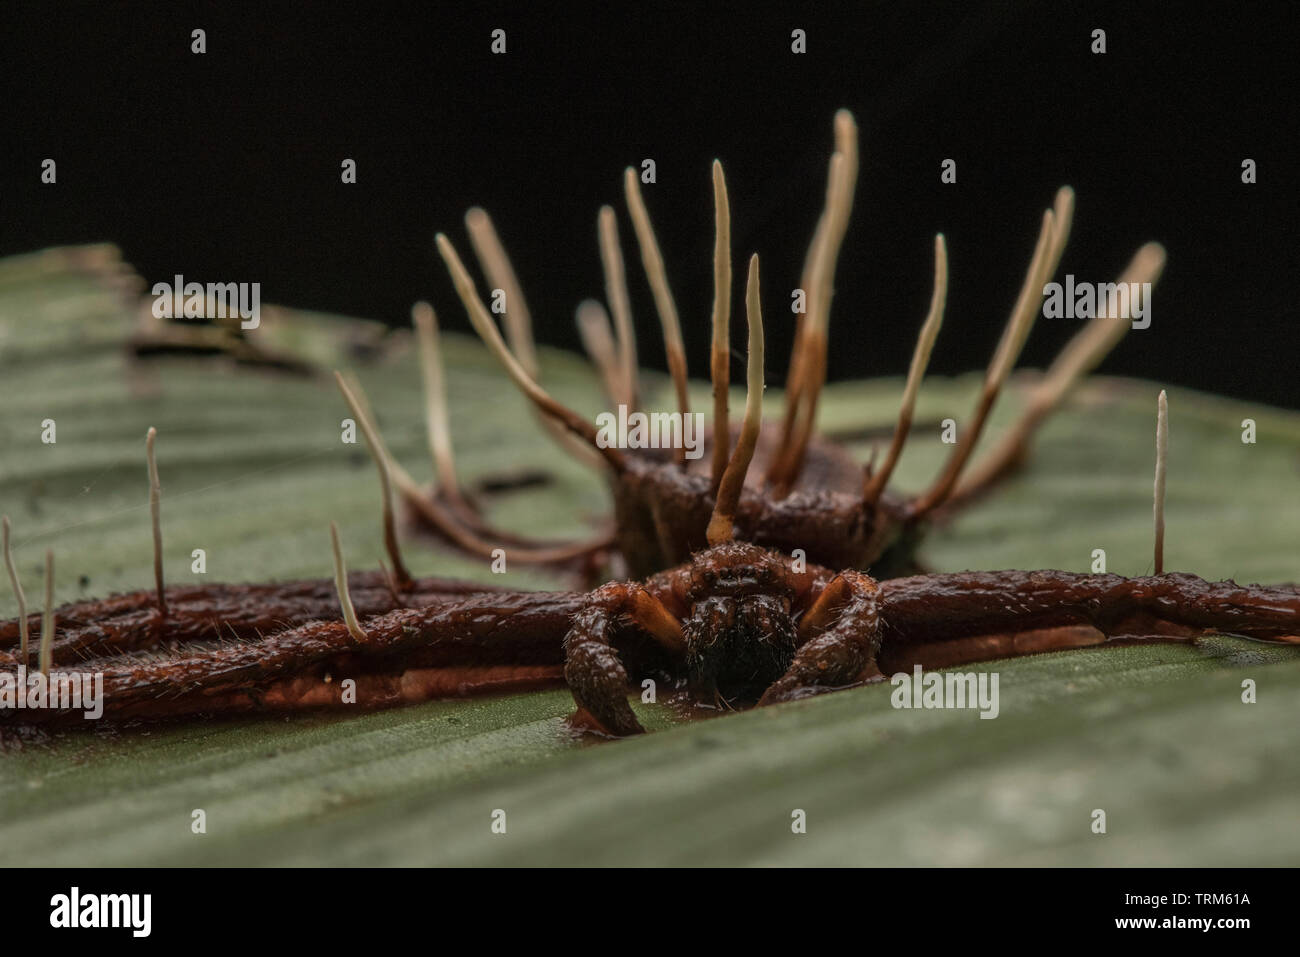 Une araignée qui a été tué par un champignon entomopathogène, peut-être une espèce cordyceps ou ophiocordyceps. Banque D'Images